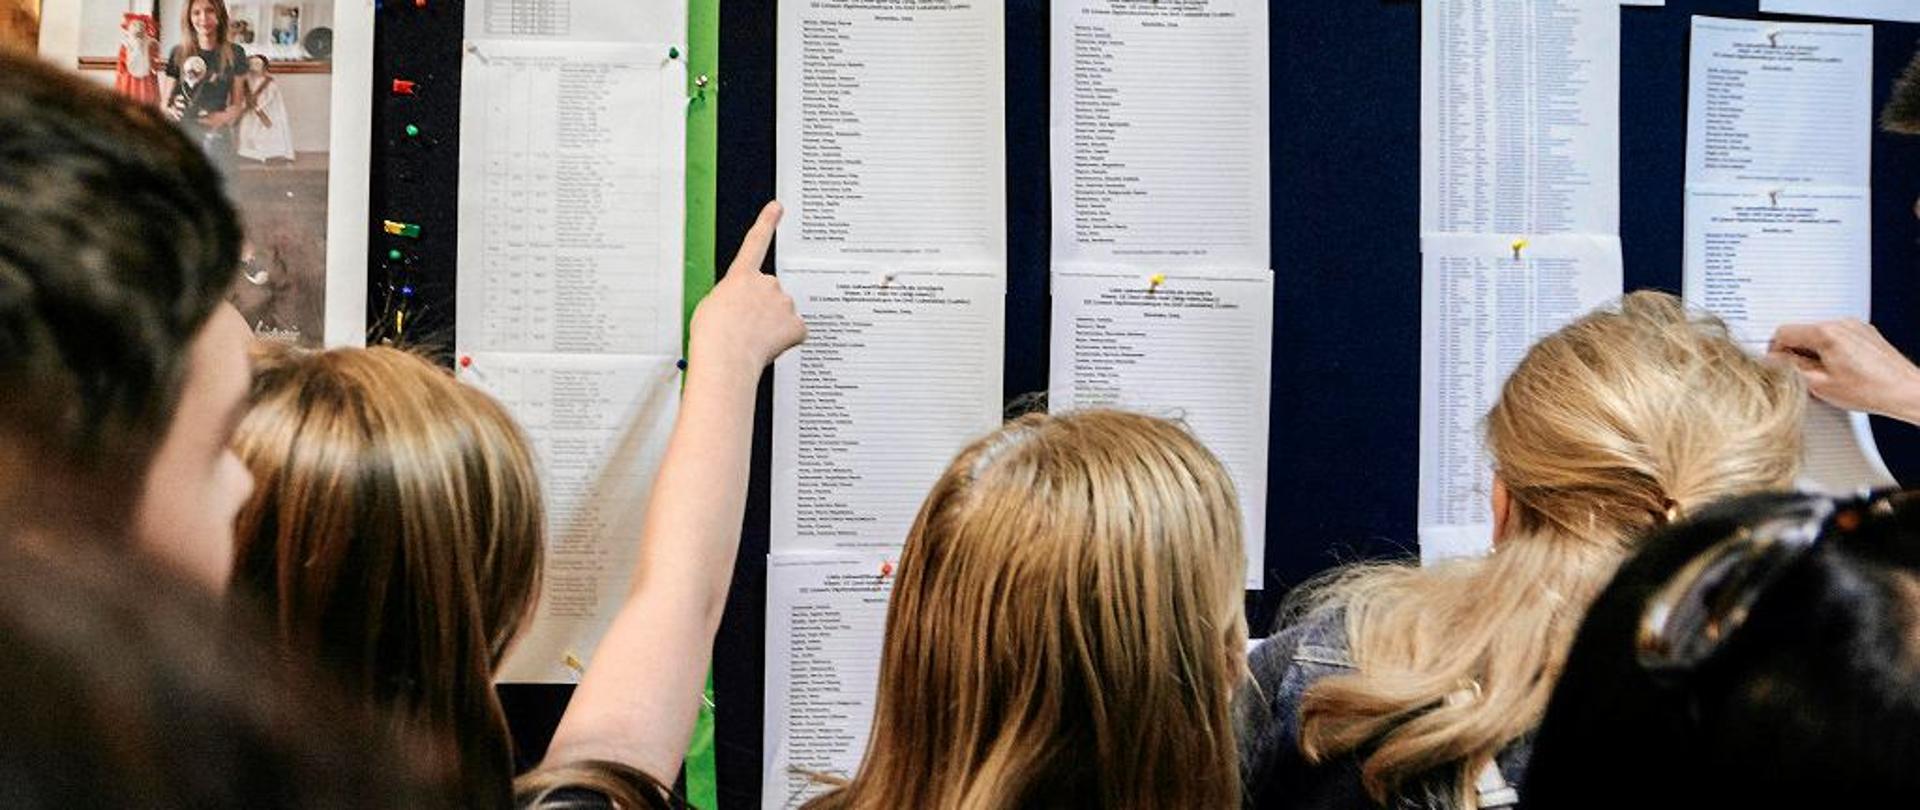 uczniowie sprawdzają listy uczniów przyjętych do szkoły, znajdującą się na tablicy ogłoszeń